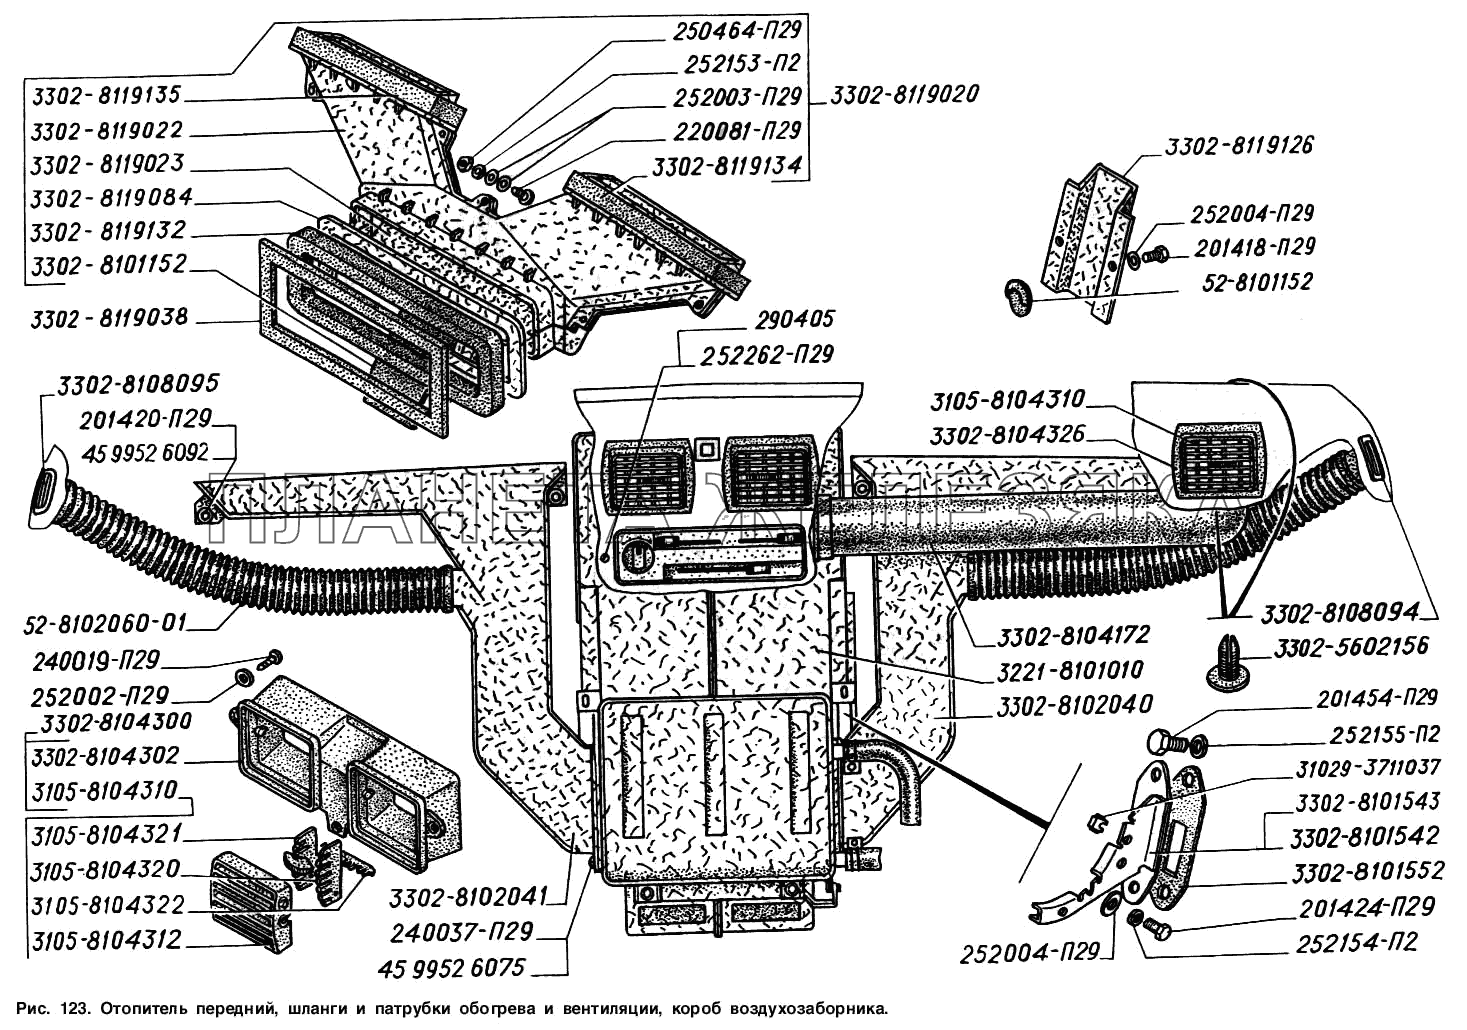 Отопитель передний, шланги и патрубки обогрева и вентиляции, короб воздухозаборника ГАЗ-2217 (Соболь)